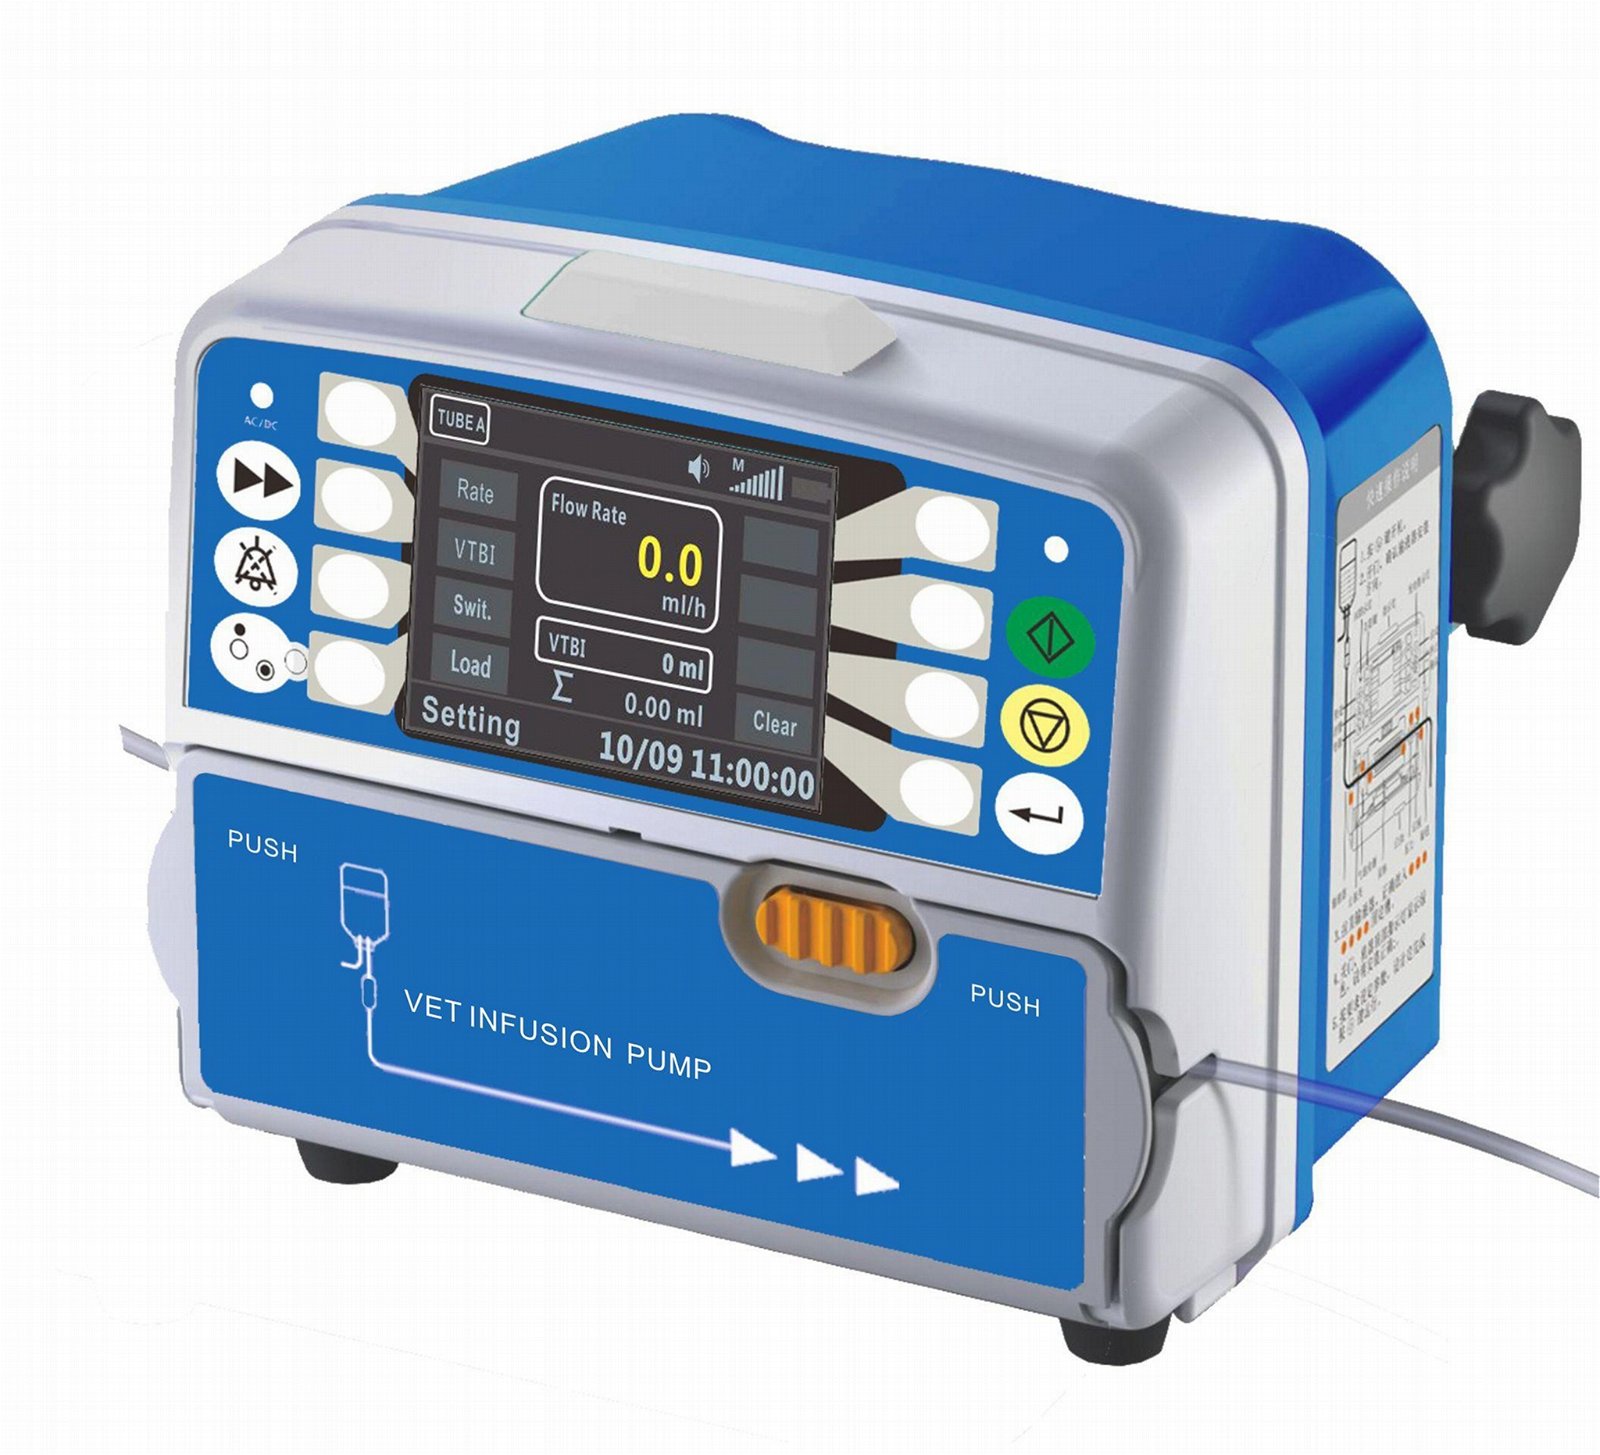 HK-050vet infusion pump